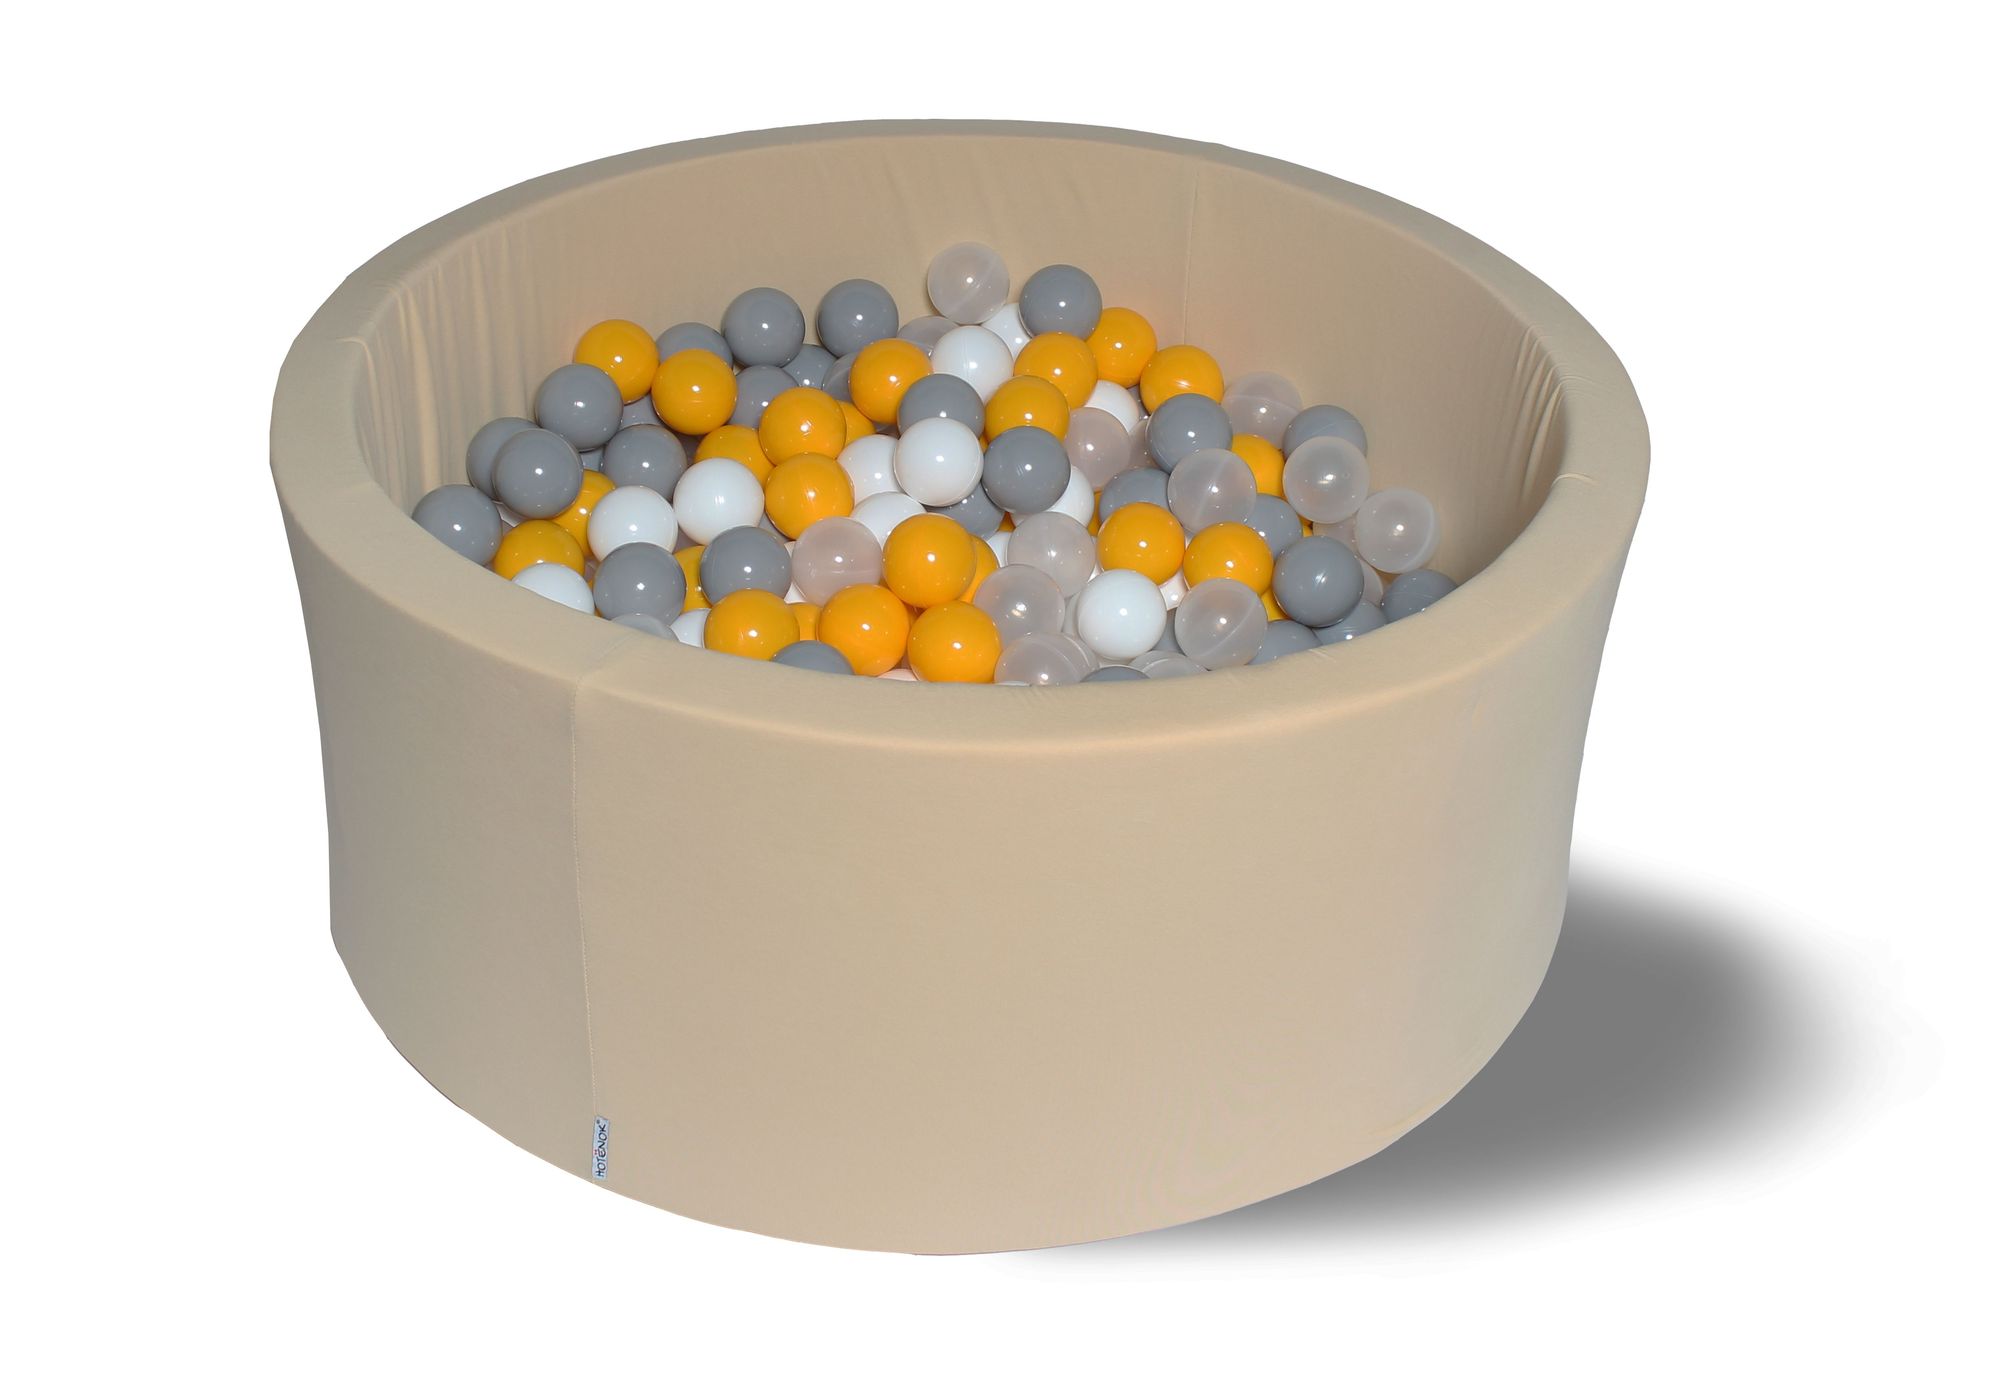 фото Сухой игровой бассейн жемчужные лучики выс, 40см, с 200 шарами: бел, прозр, желт, сер hotenok